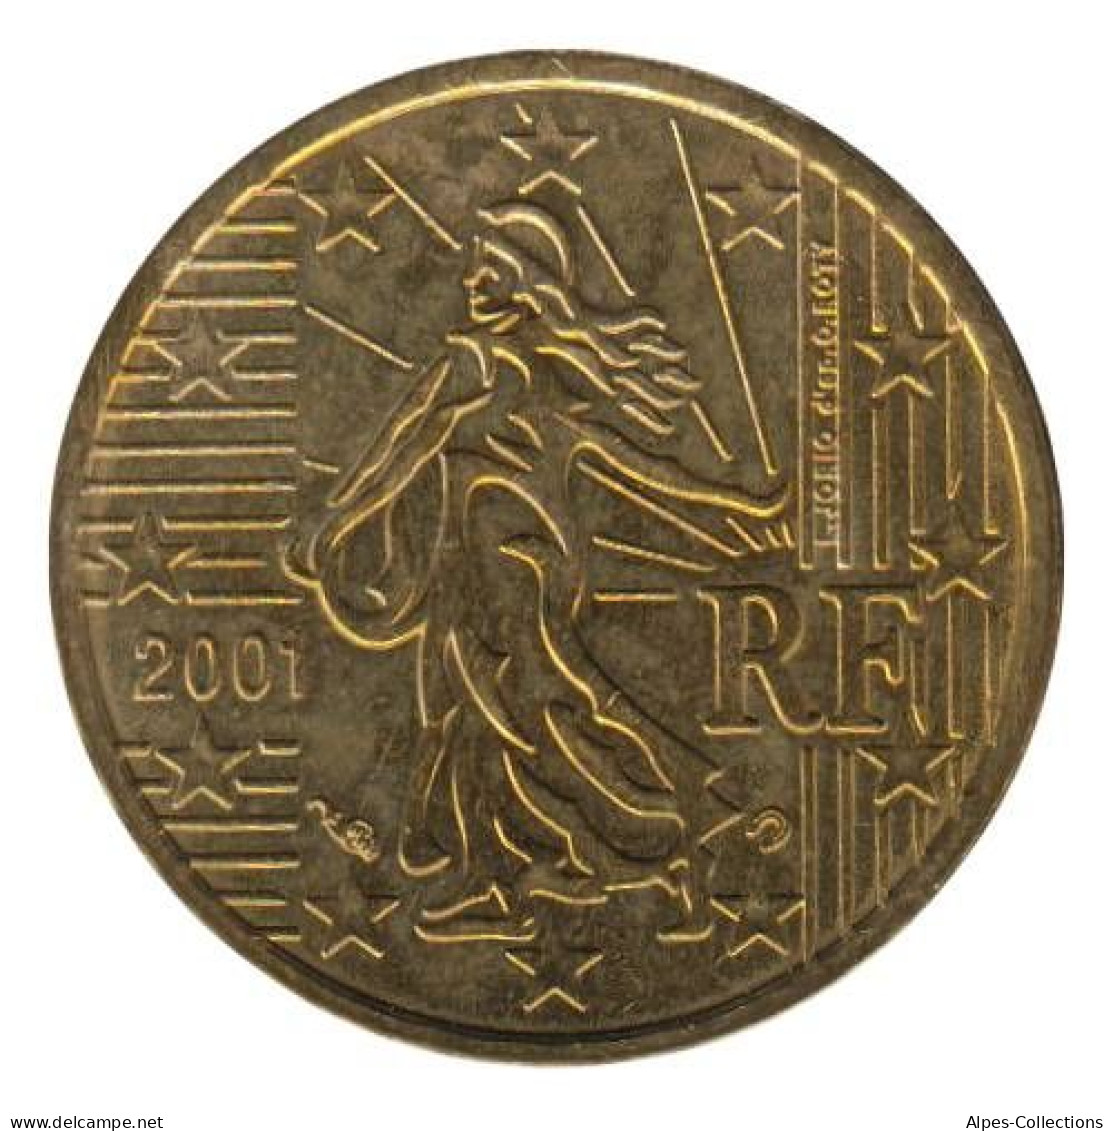 FR01001.1 - FRANCE - 10 Cents - 2001 - France